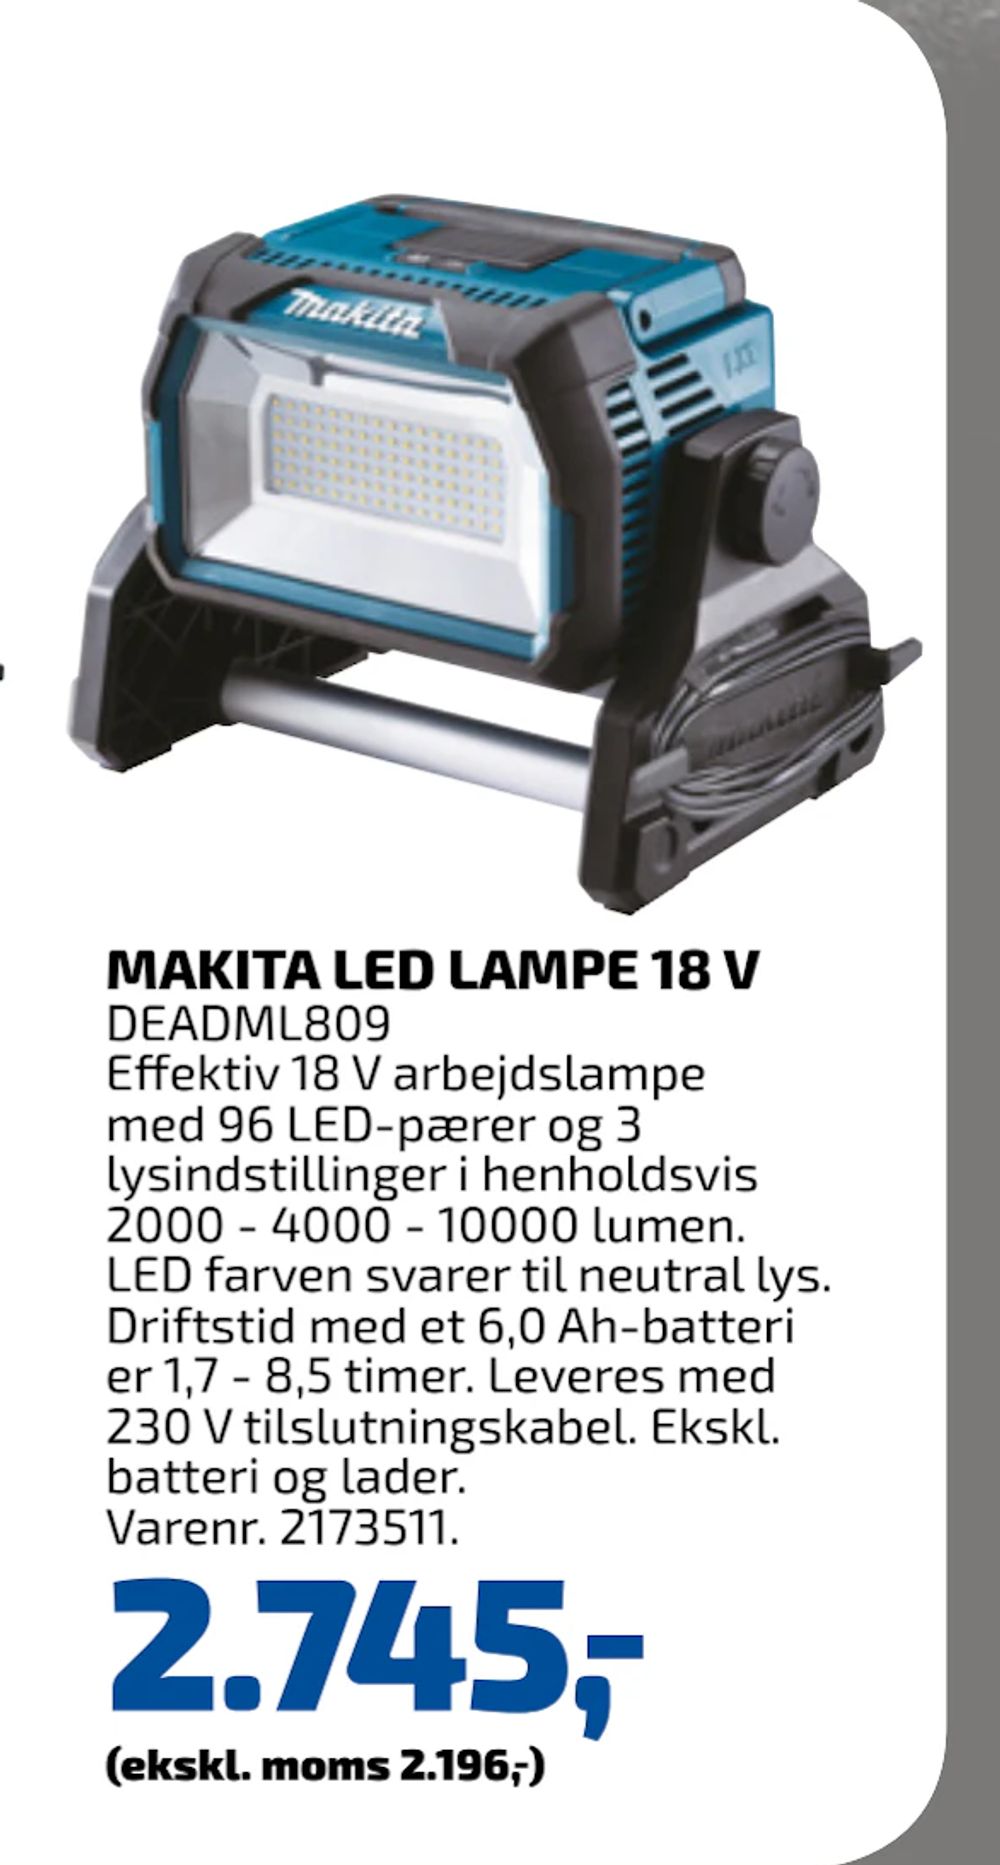 Tilbud på MAKITA LED LAMPE 18 V fra Davidsen til 2.745 kr.